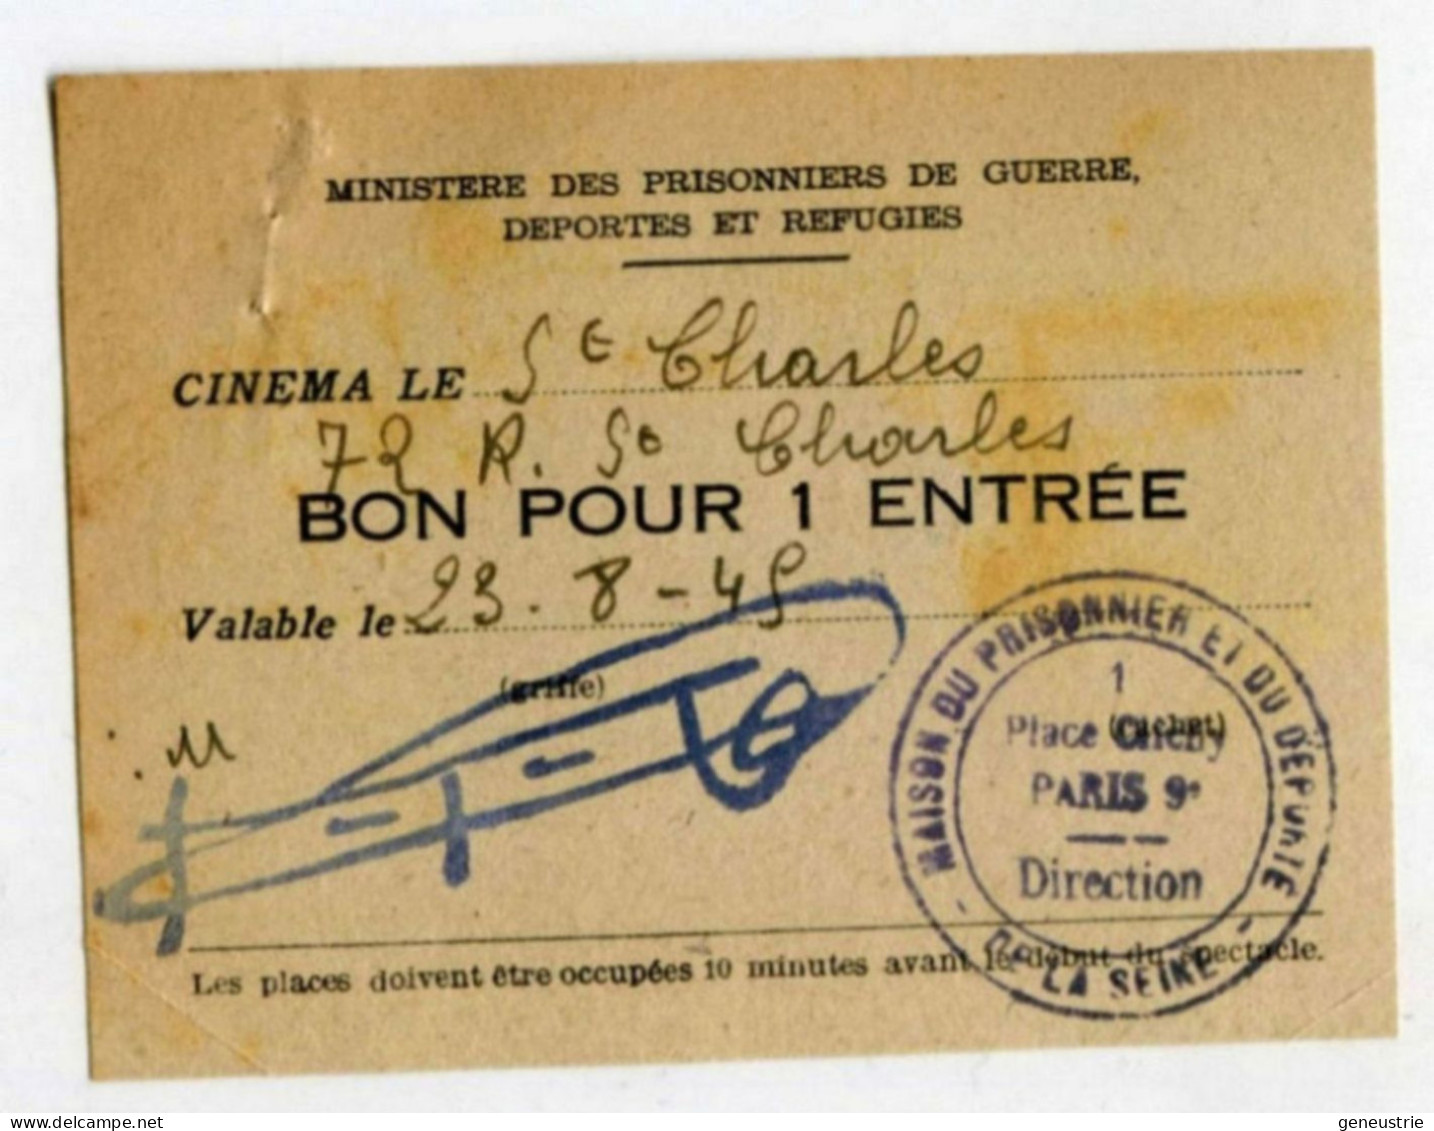 WW2 Bon De Nécessité "Bon Pour 1 Entrée" Ticket Cinéma St Charles - Maison Du Prisonnier Et Du Déporté - WWII - Noodgeld